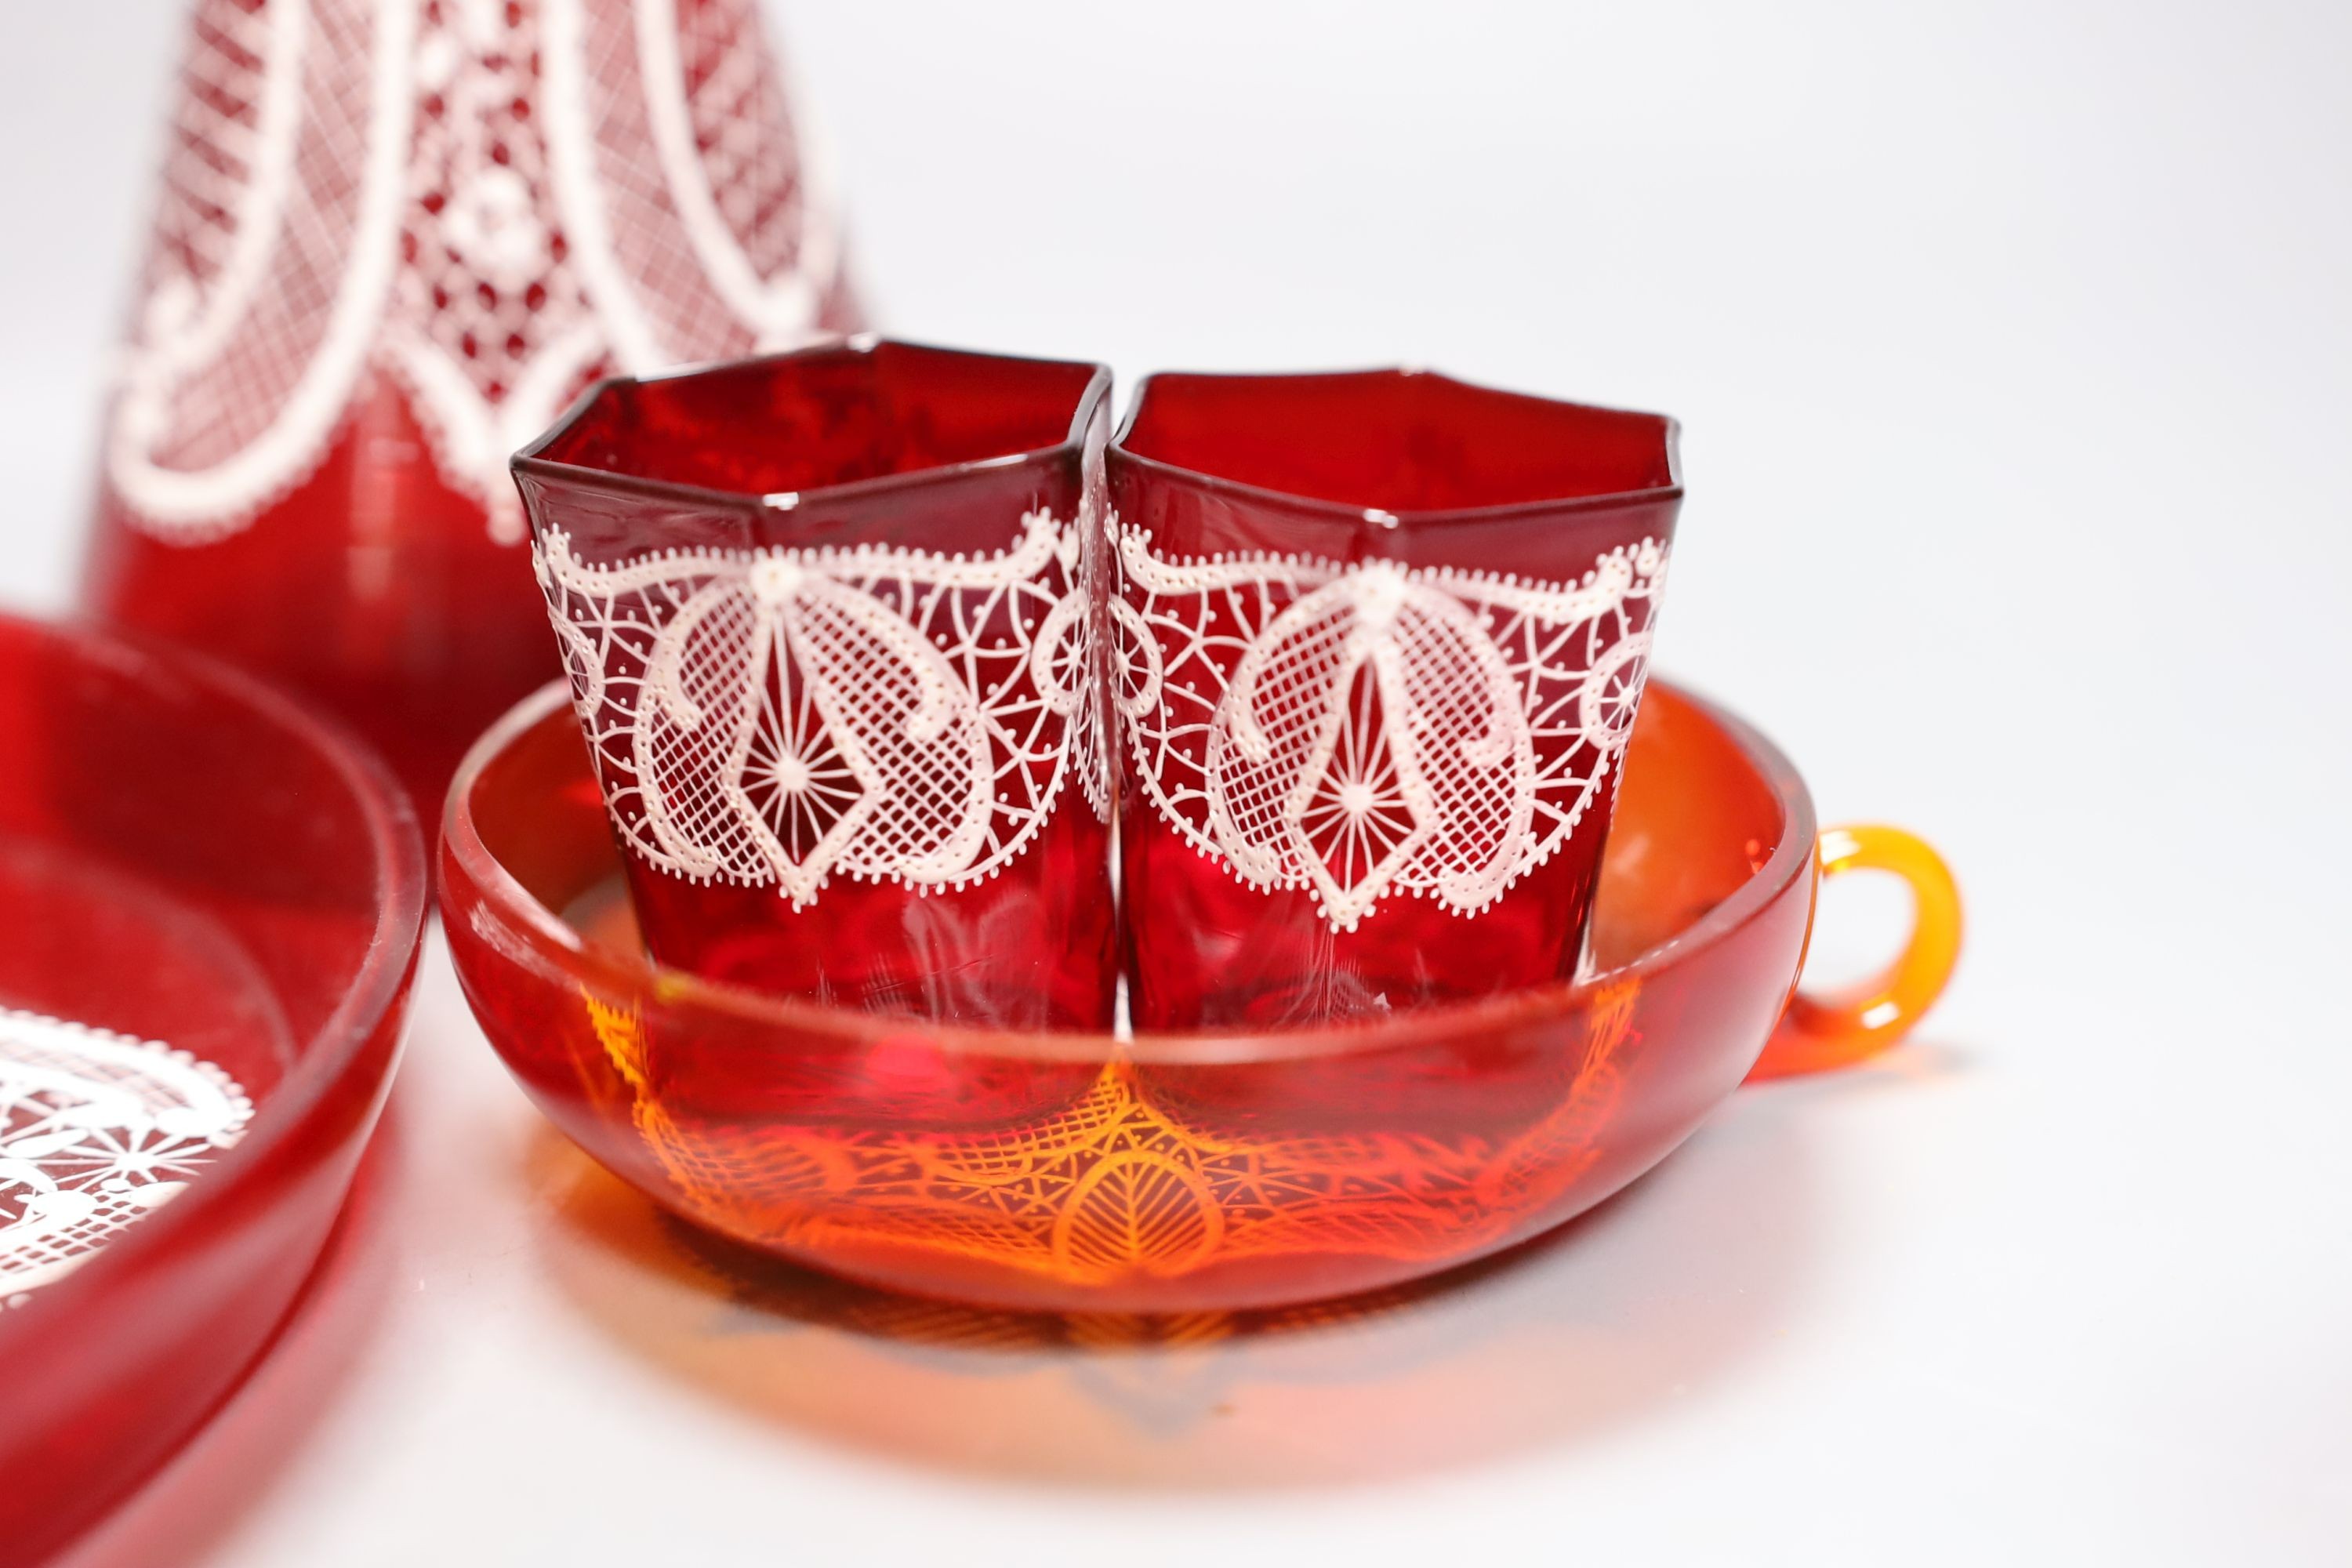 A Venetian red enamelled glass lace-pattern liqueur set